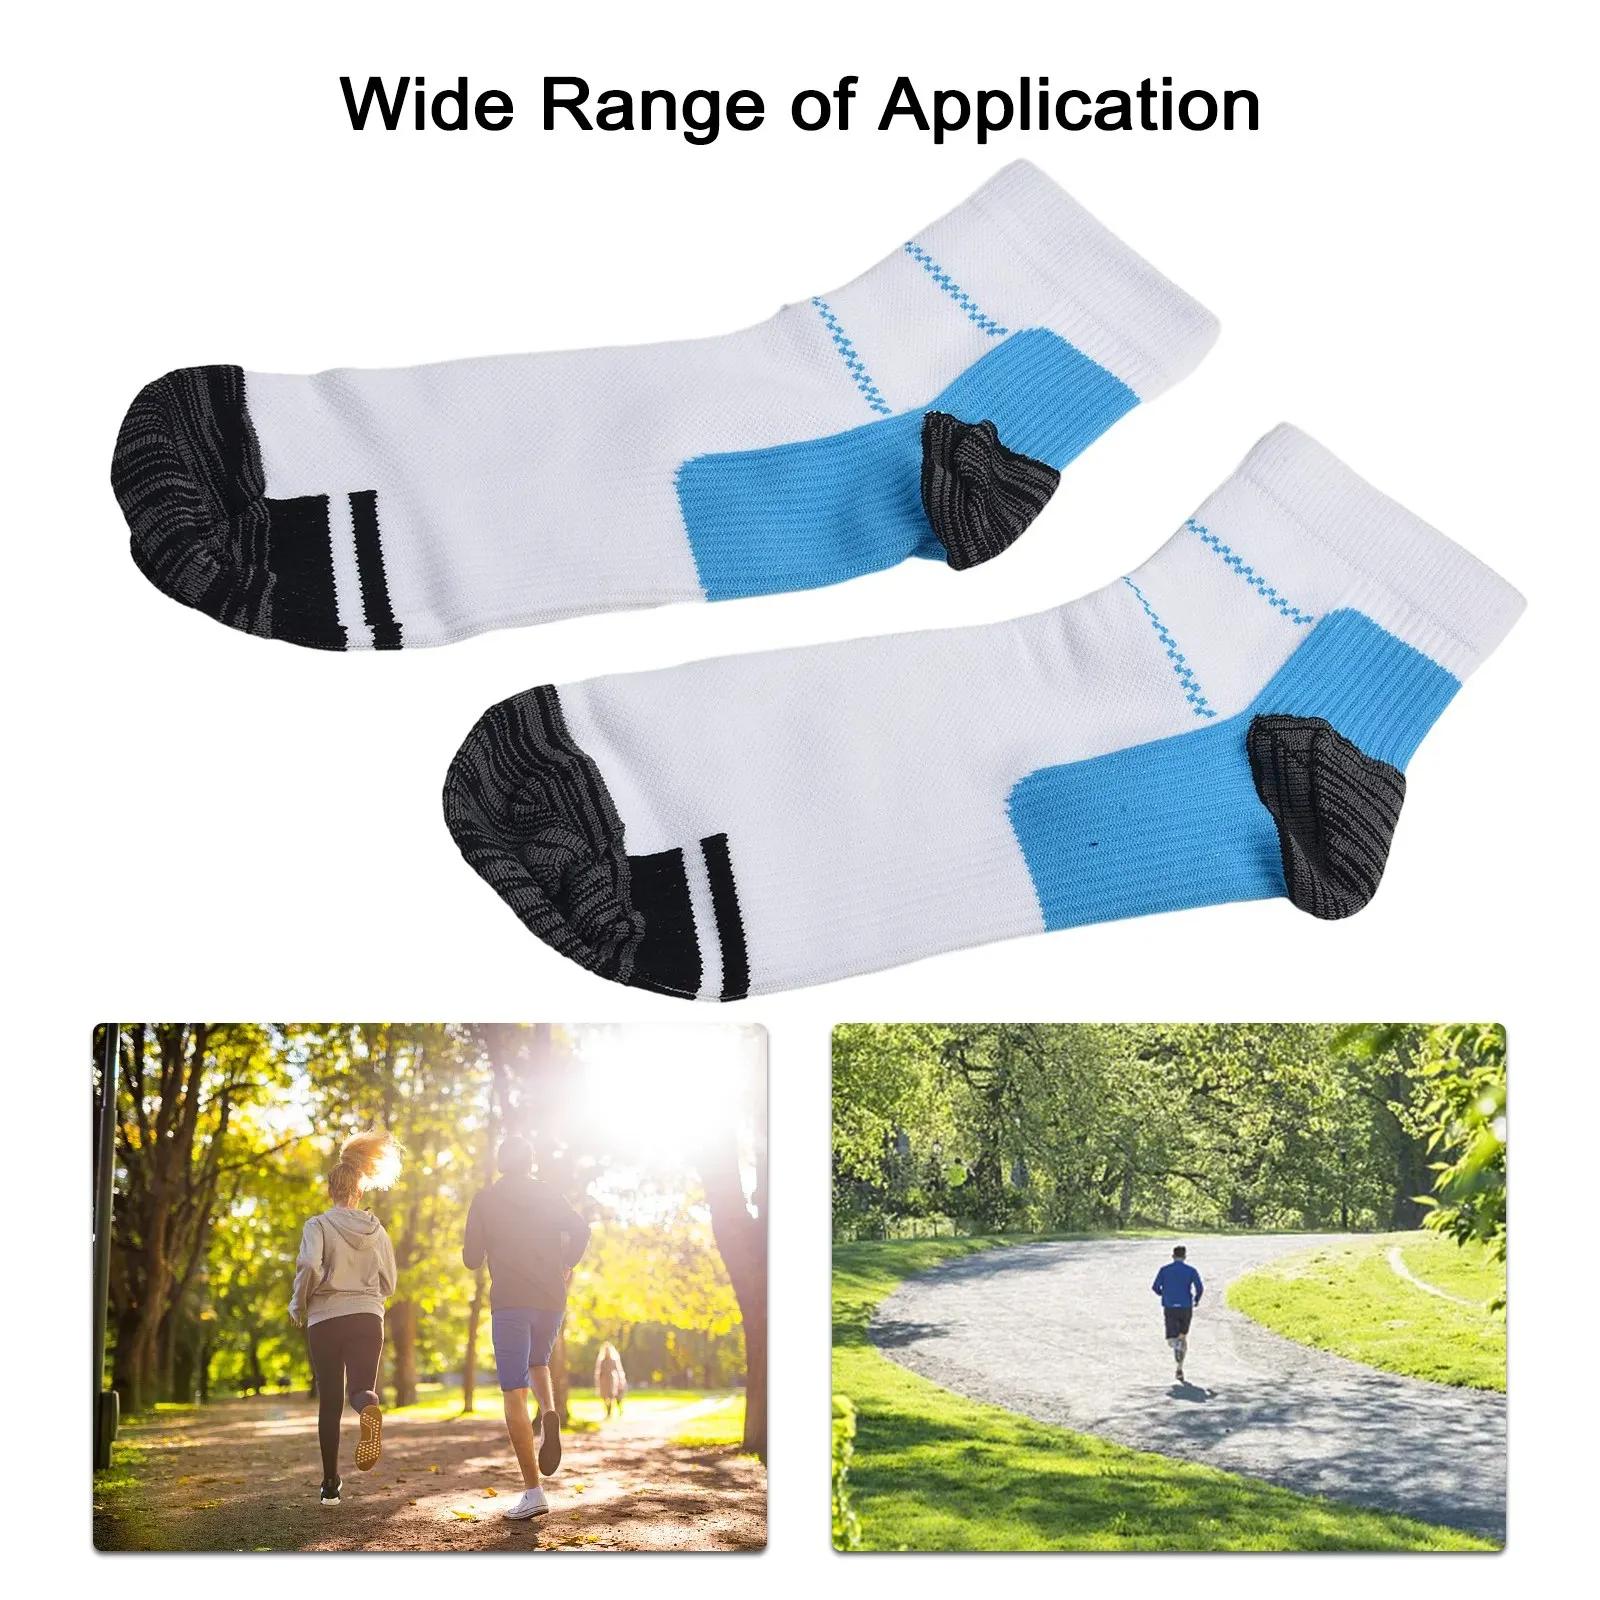 

Носки для фитнеса, спортивные носки, короткие носки, Компрессионные носки для ног, для занятий спортом на открытом воздухе, уменьшают отеки, снимают напряжение при ногах